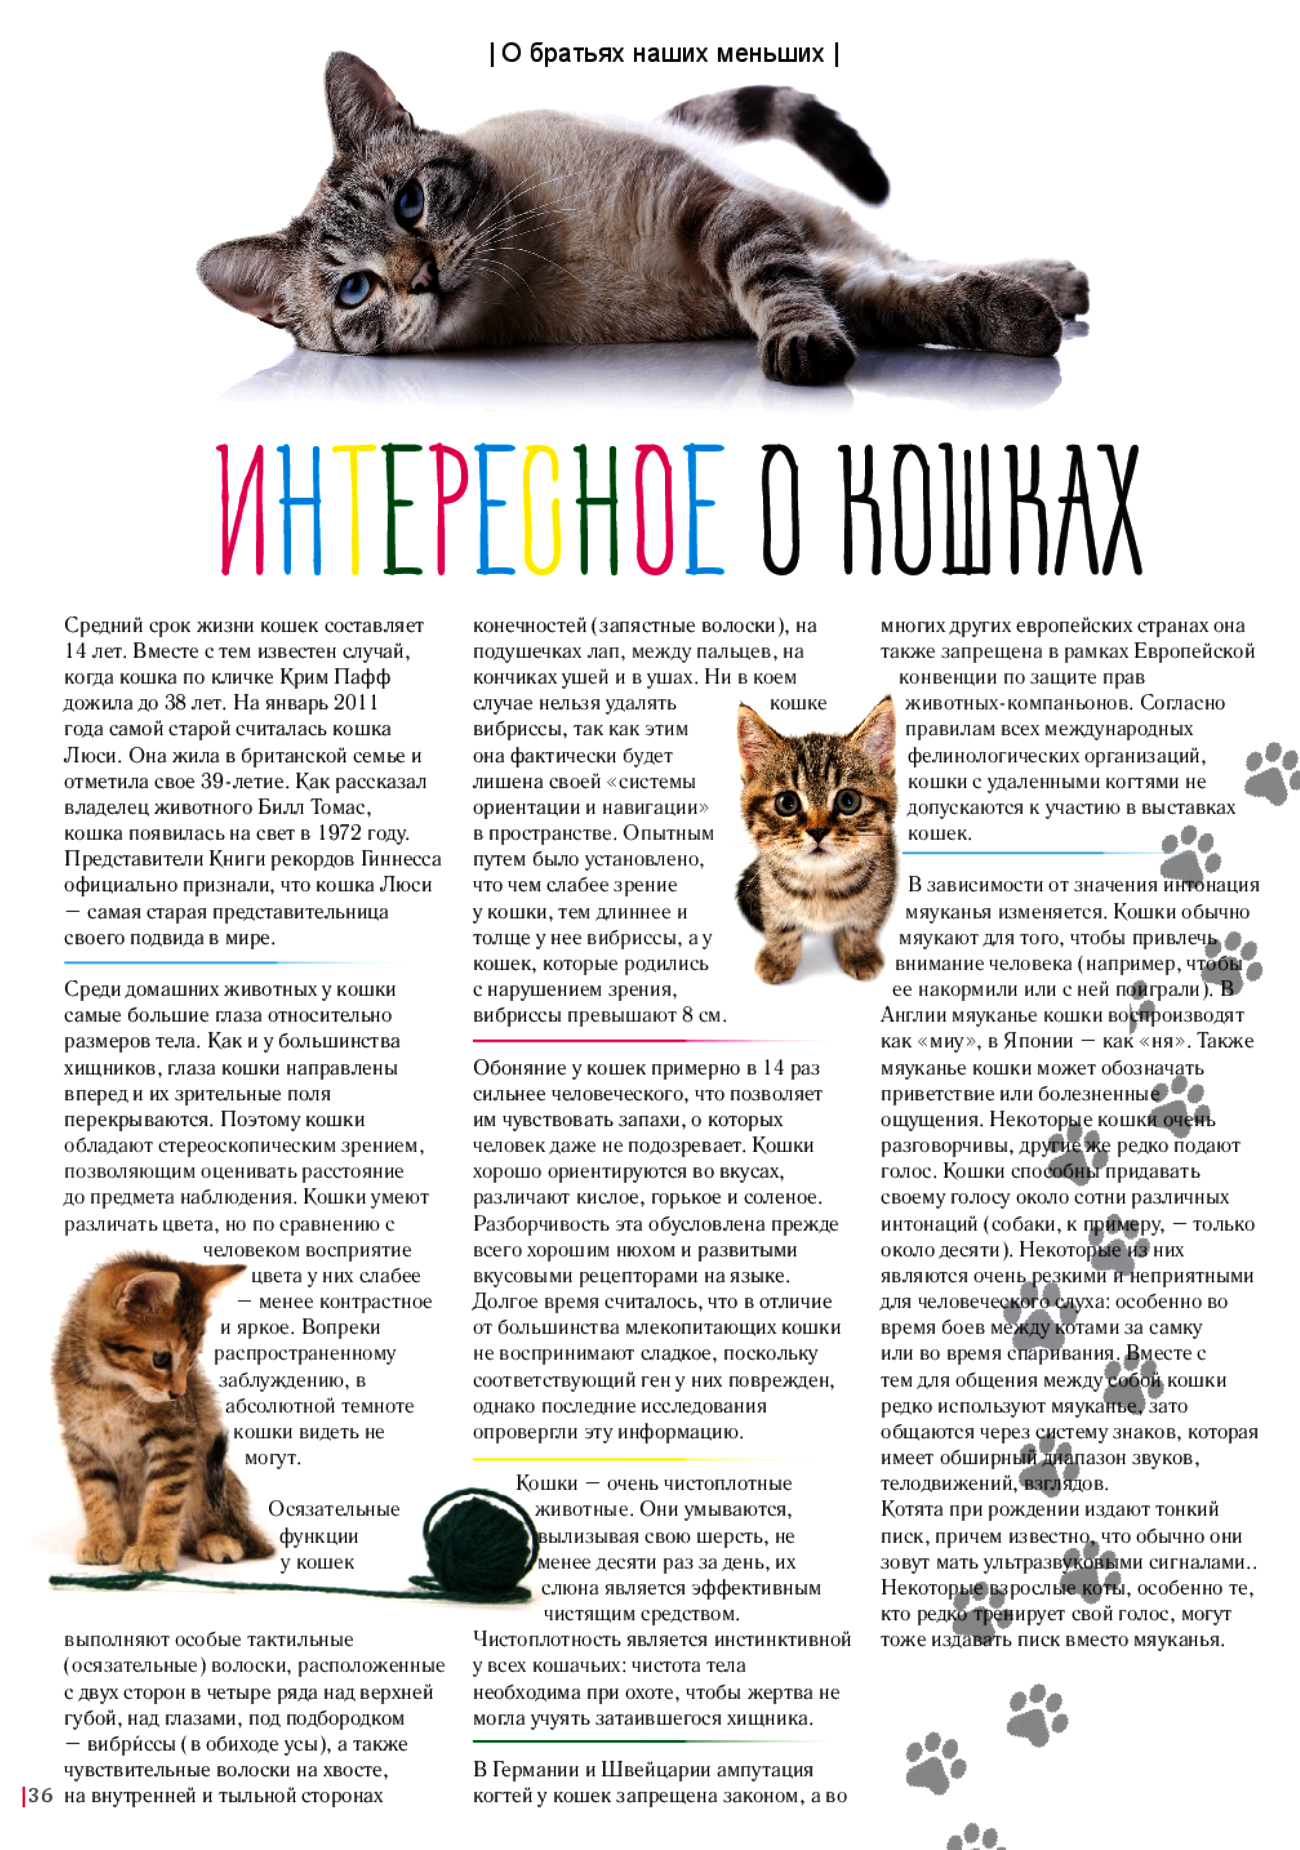 Британская короткошёрстная кошка - фото, окрасы, описание породы и характера